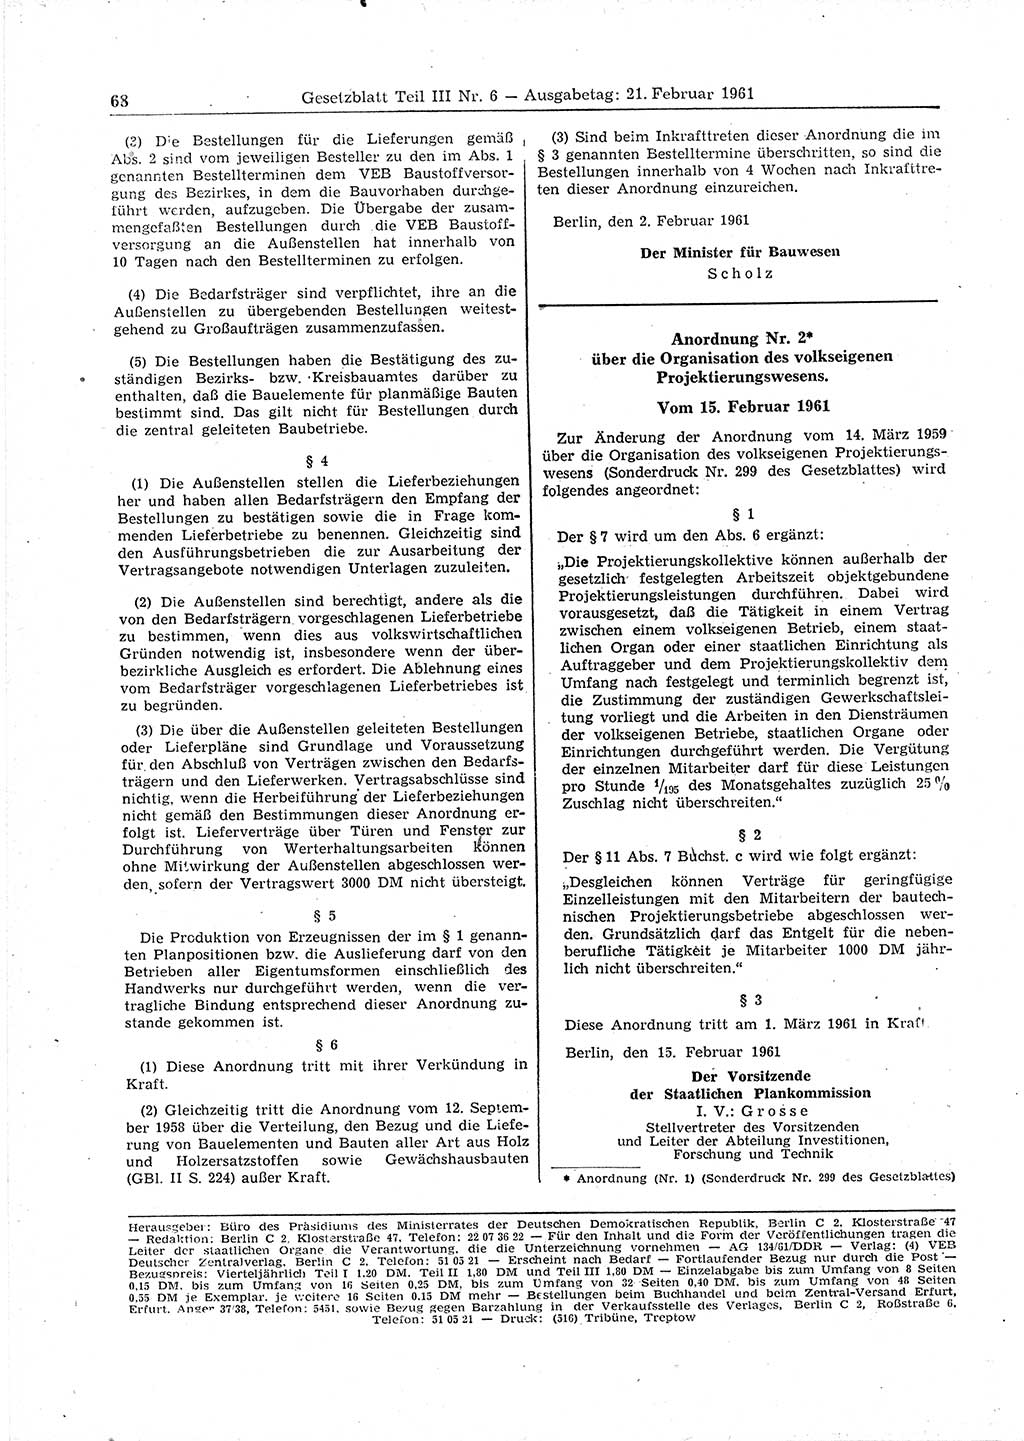 Gesetzblatt (GBl.) der Deutschen Demokratischen Republik (DDR) Teil ⅠⅠⅠ 1961, Seite 68 (GBl. DDR ⅠⅠⅠ 1961, S. 68)